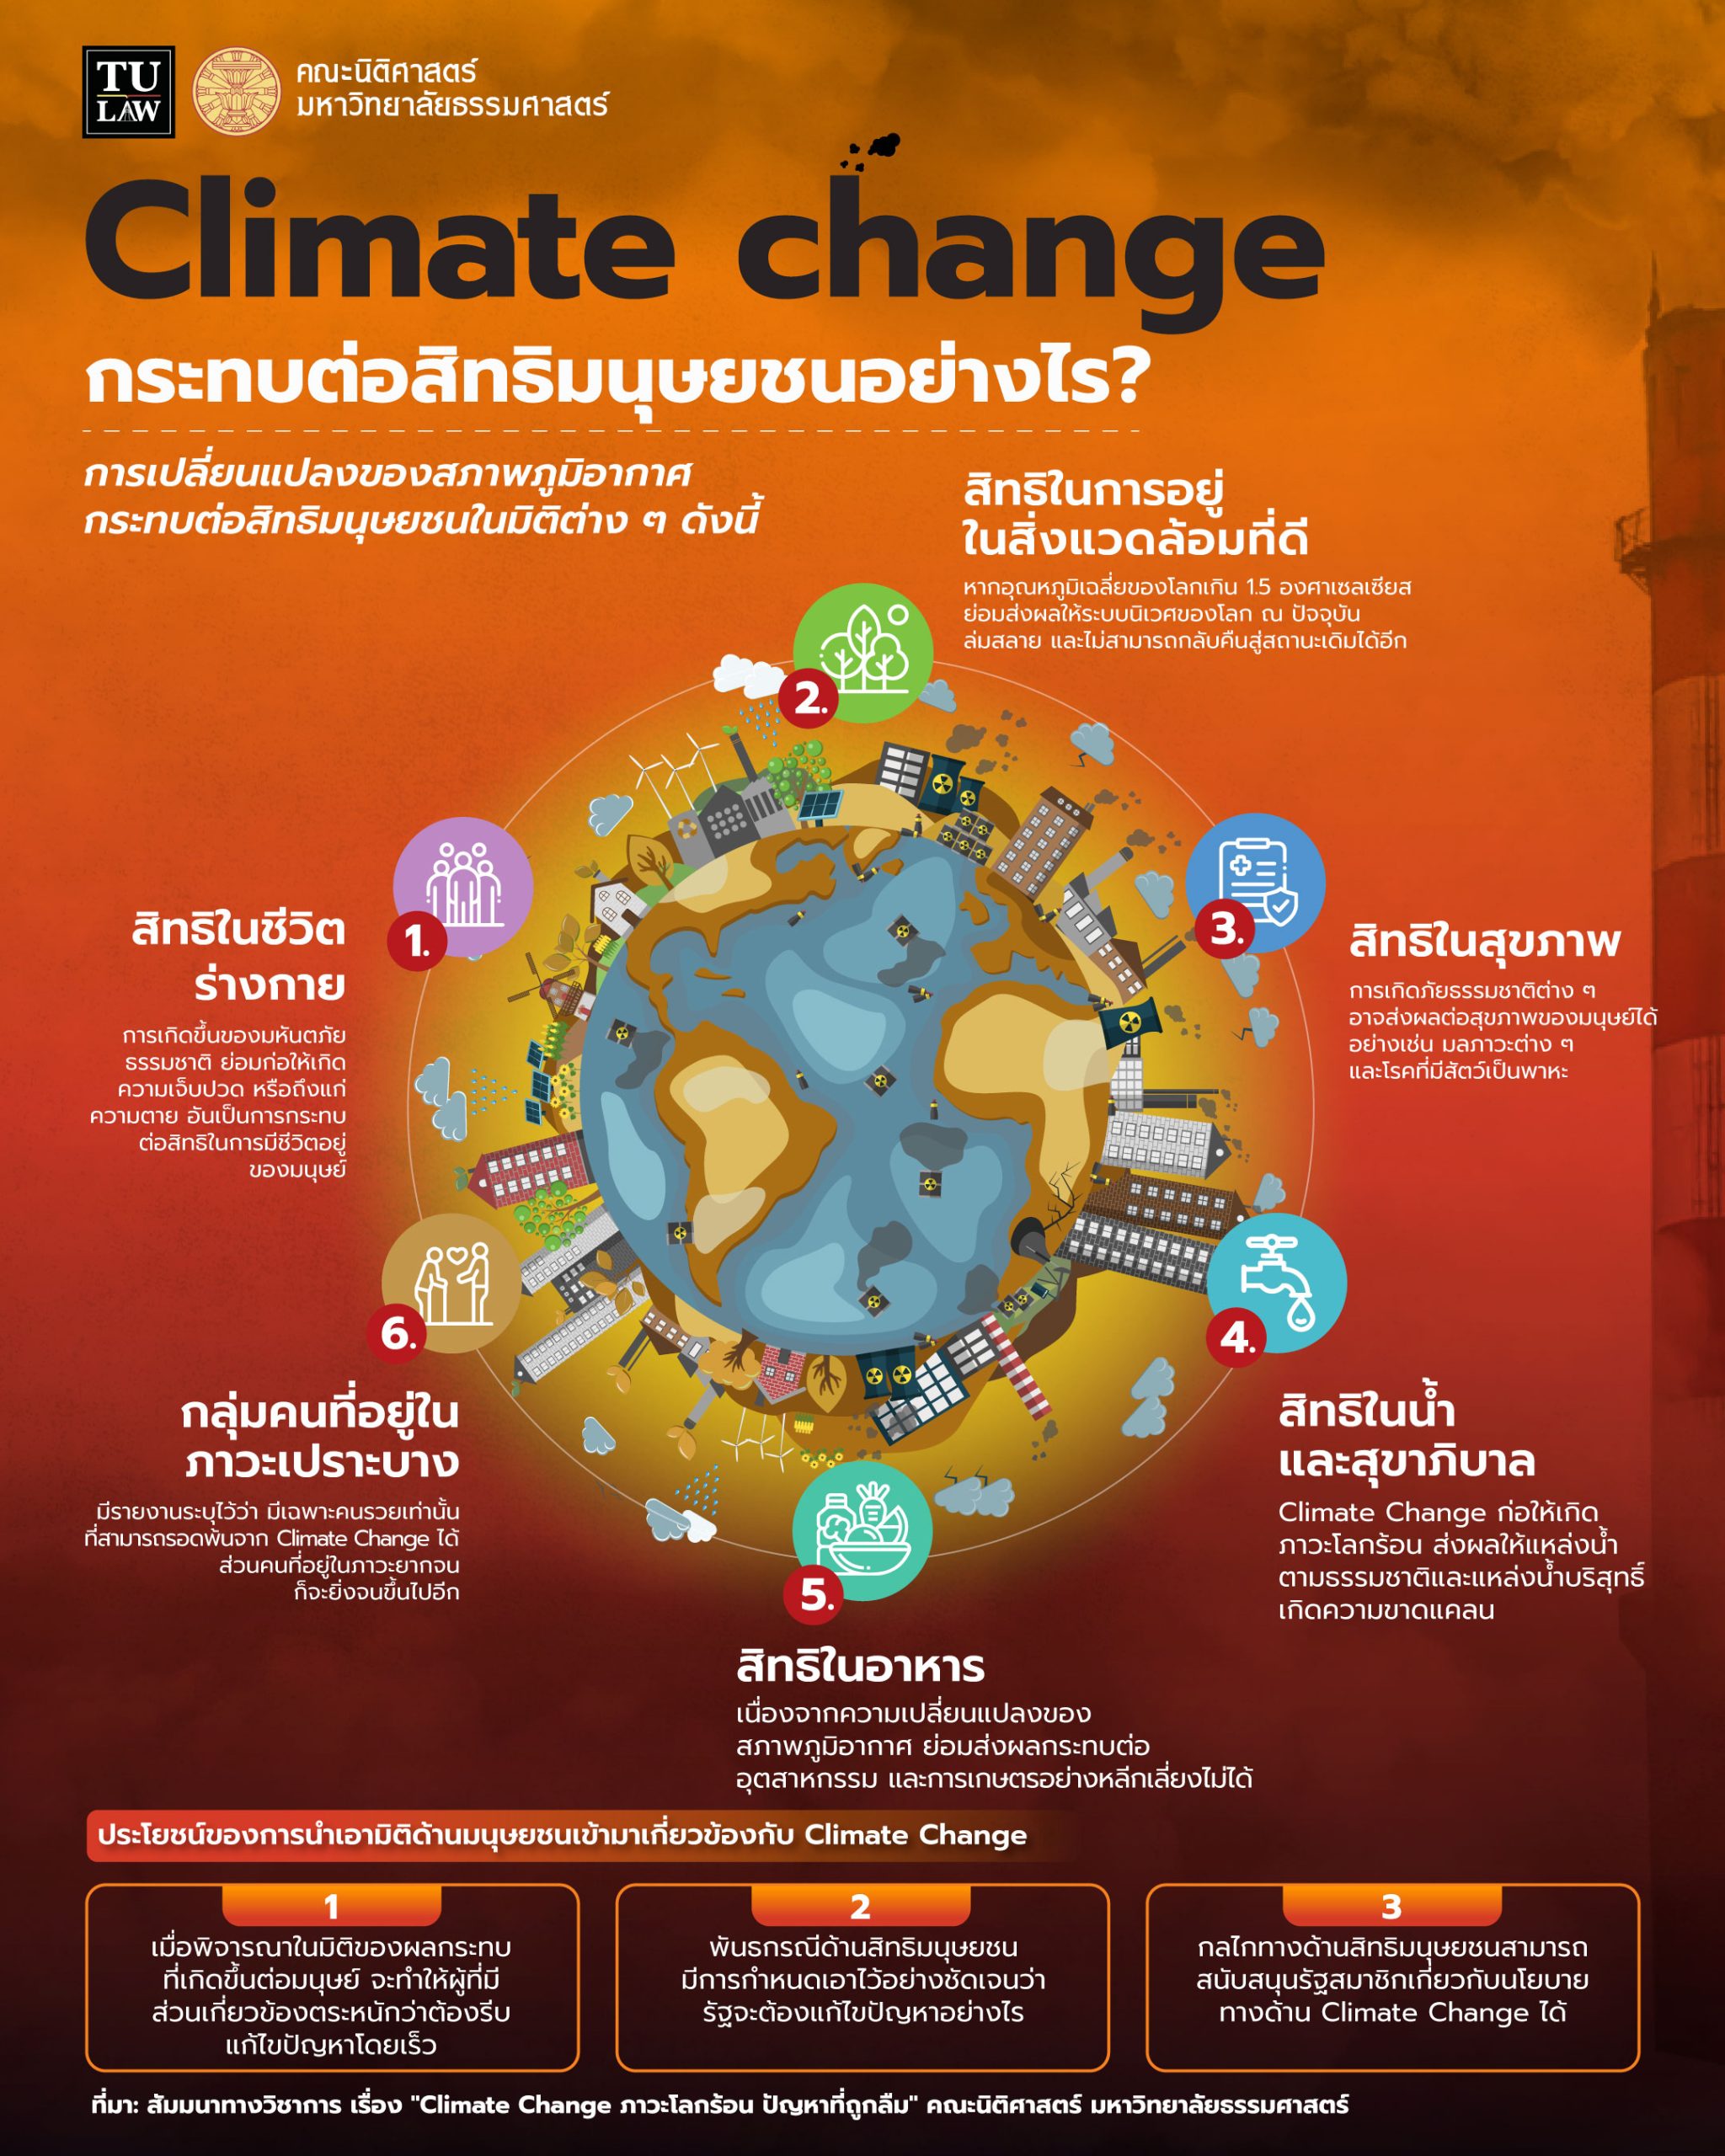 ความรู้ทางกฎหมายหลากหลายและเข้าใจง่าย ชุดที่ 5 เรื่อง “การเปลี่ยนแปลงของสภาพอากาศ” และ “สิทธิมนุษยชน” เกี่ยวข้องกันอย่างไร ?